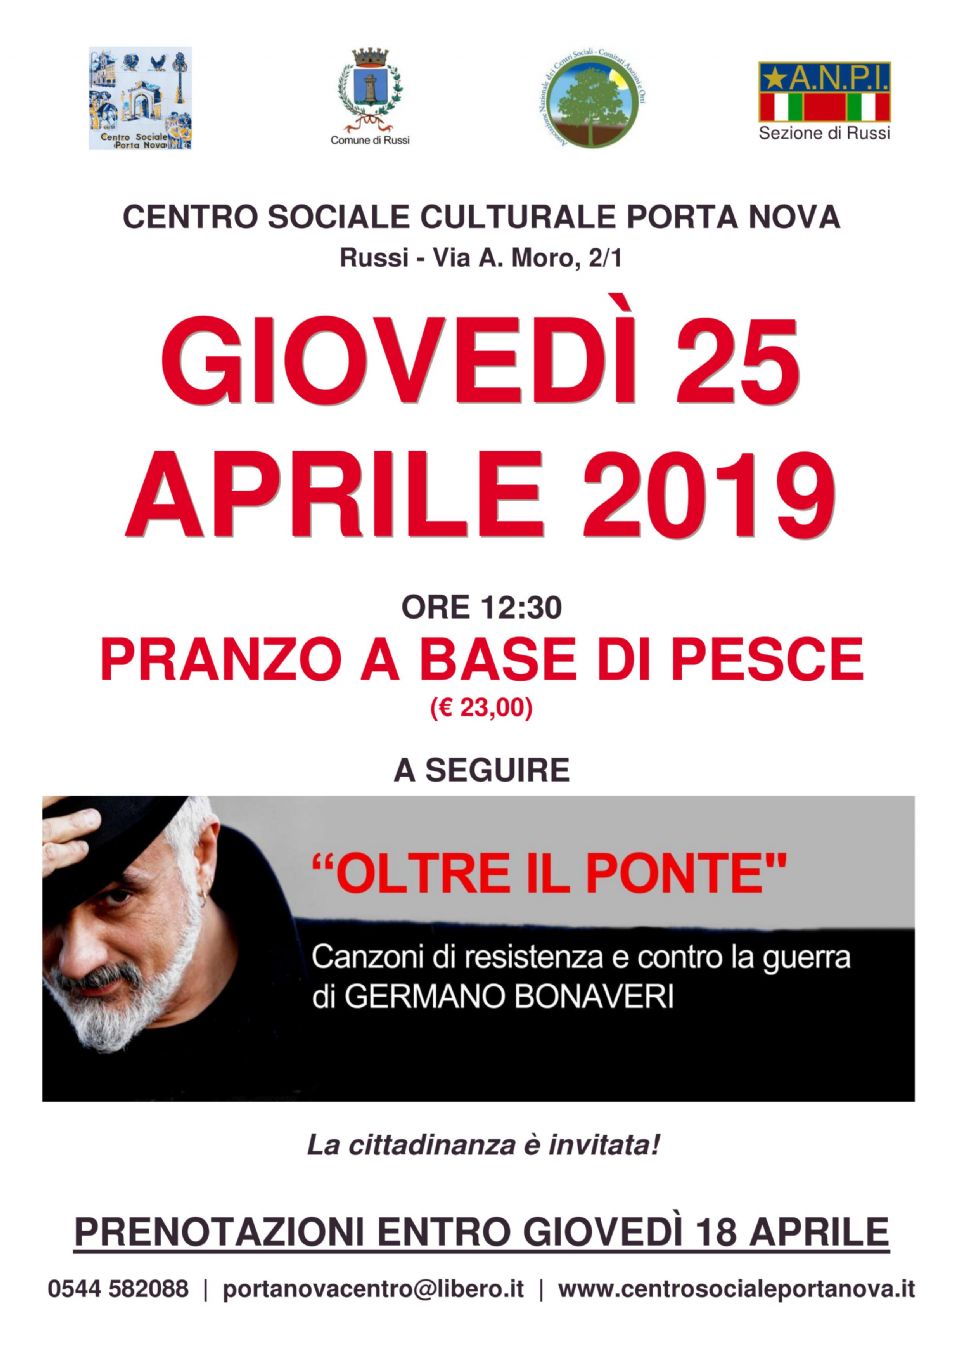 Celebrazioni del 25 Aprile a Porta Nova con la collaborazione di ANPI e Comune di Russi - Comitato Antifascista